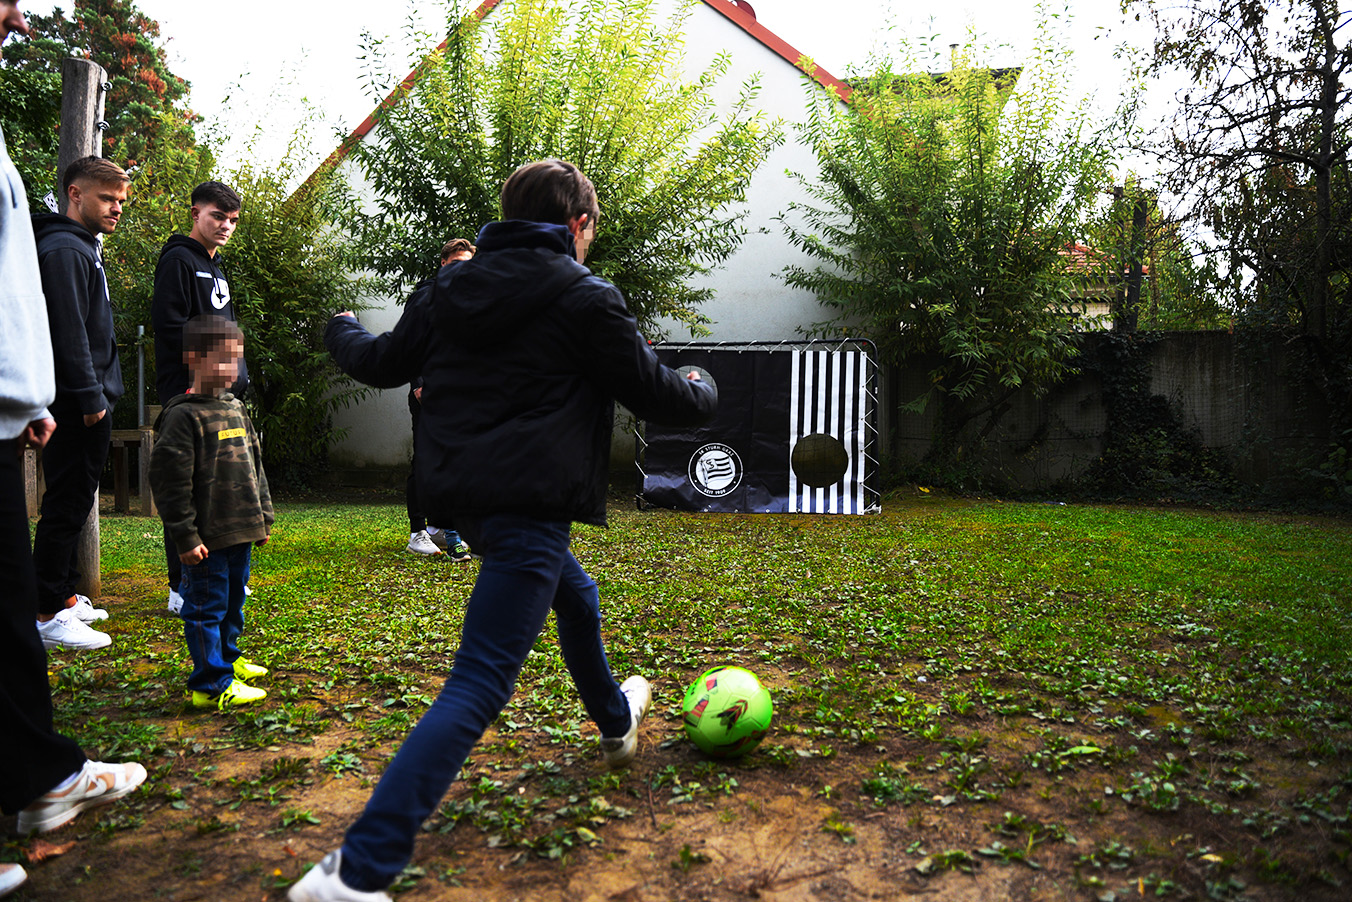 Kinder spielen, im Garten des Frauenhauses, Fußball mit den Spieler:innen des SK Sturm Graz.